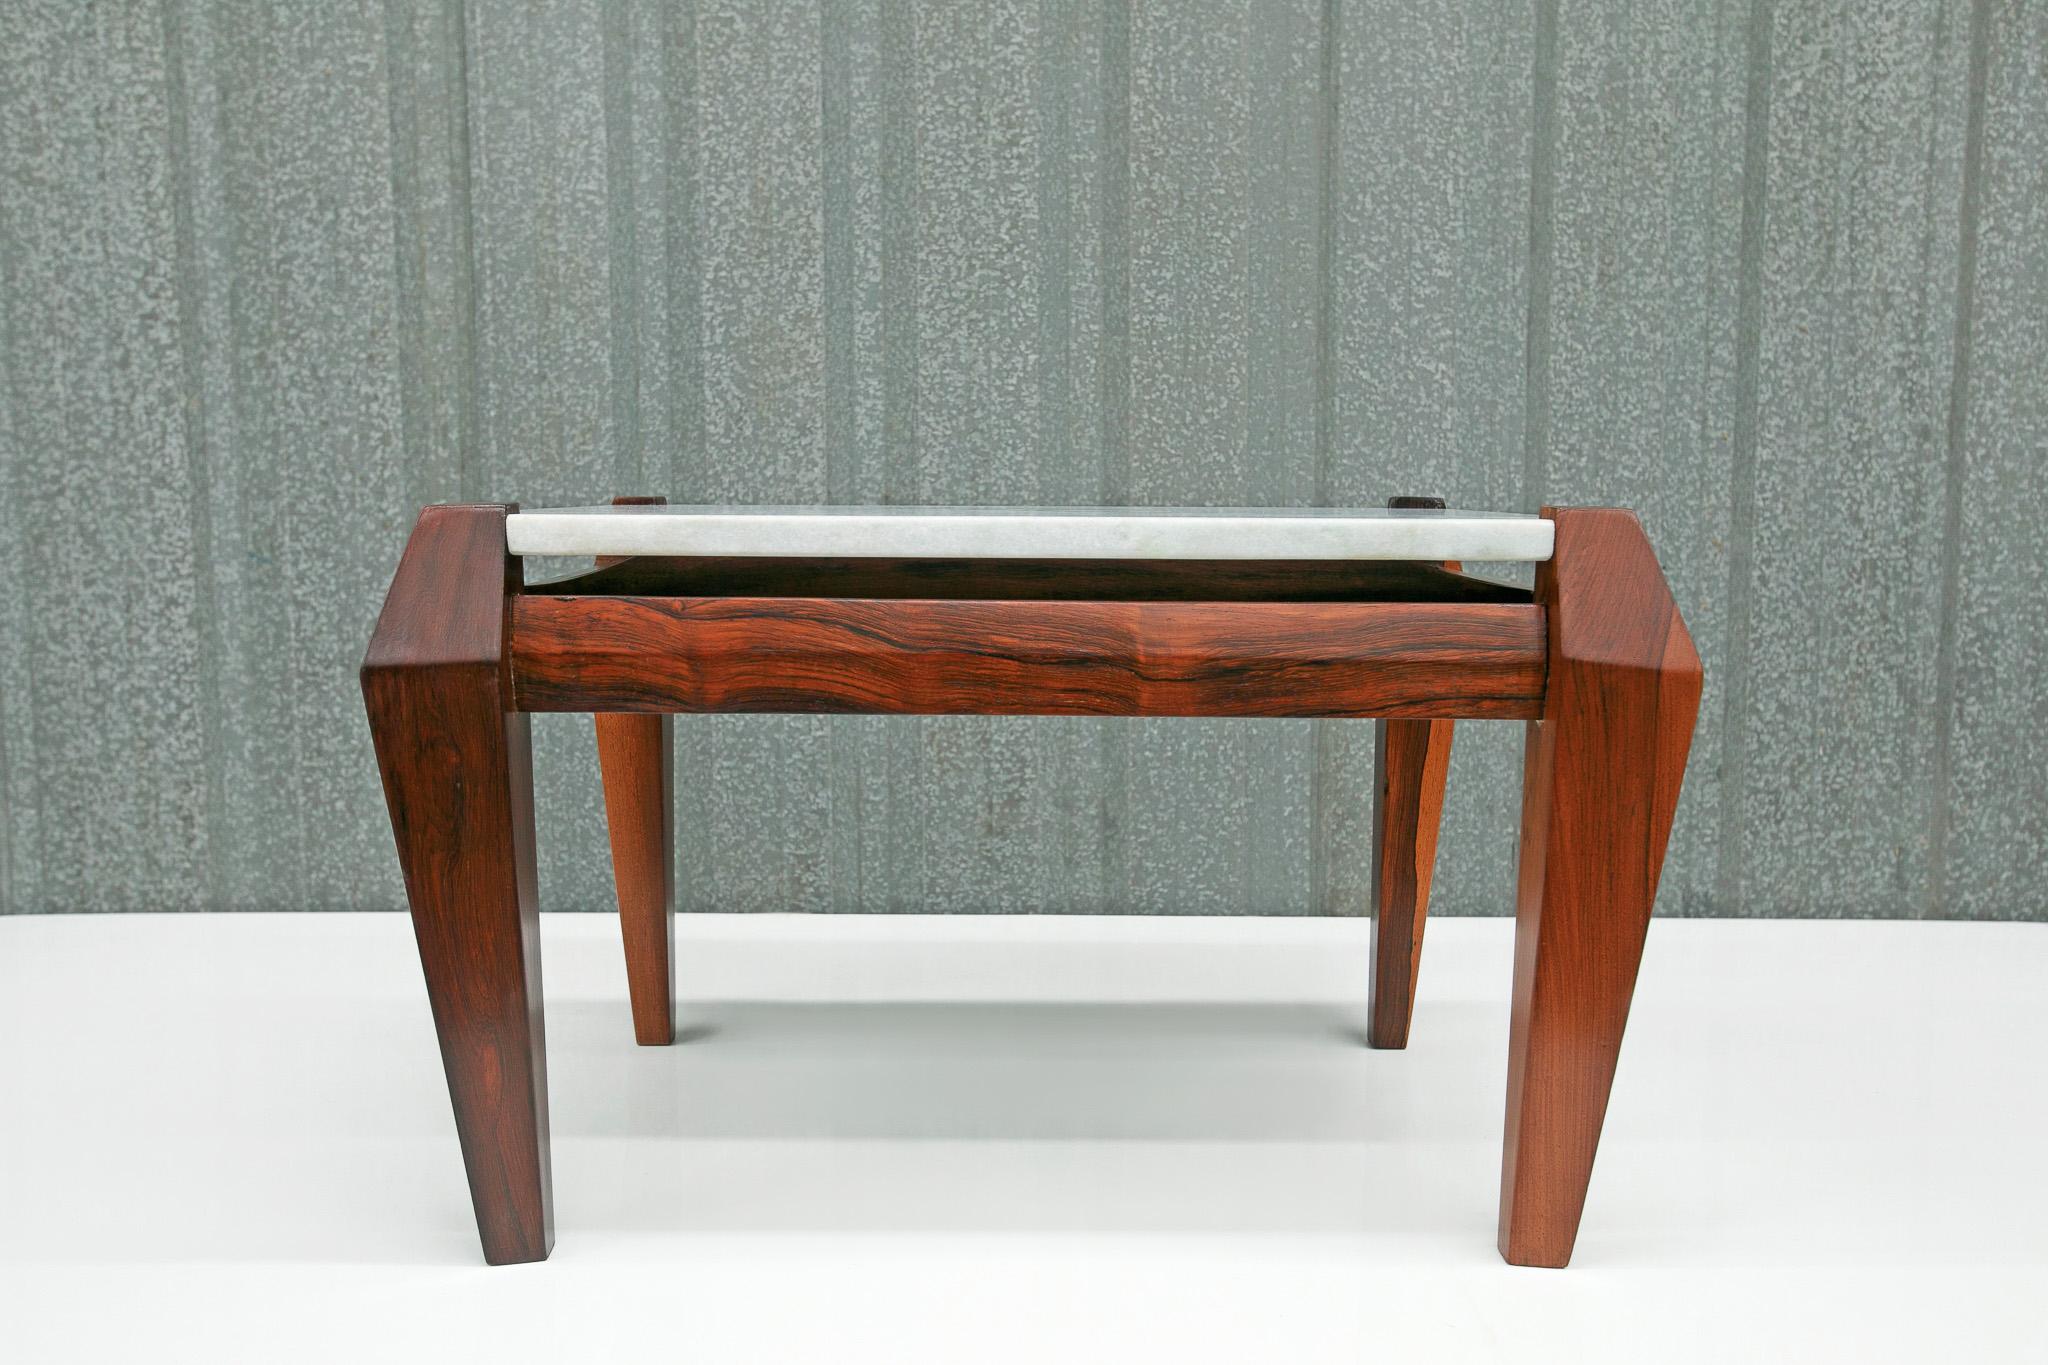 Disponible aujourd'hui, cette table basse moderne du milieu du siècle, en palissandre massif et marbre, conçue par Jean Gillon dans les années 60, n'est rien de moins que spectaculaire !

Ce qui rend cette table basse si particulière, c'est le